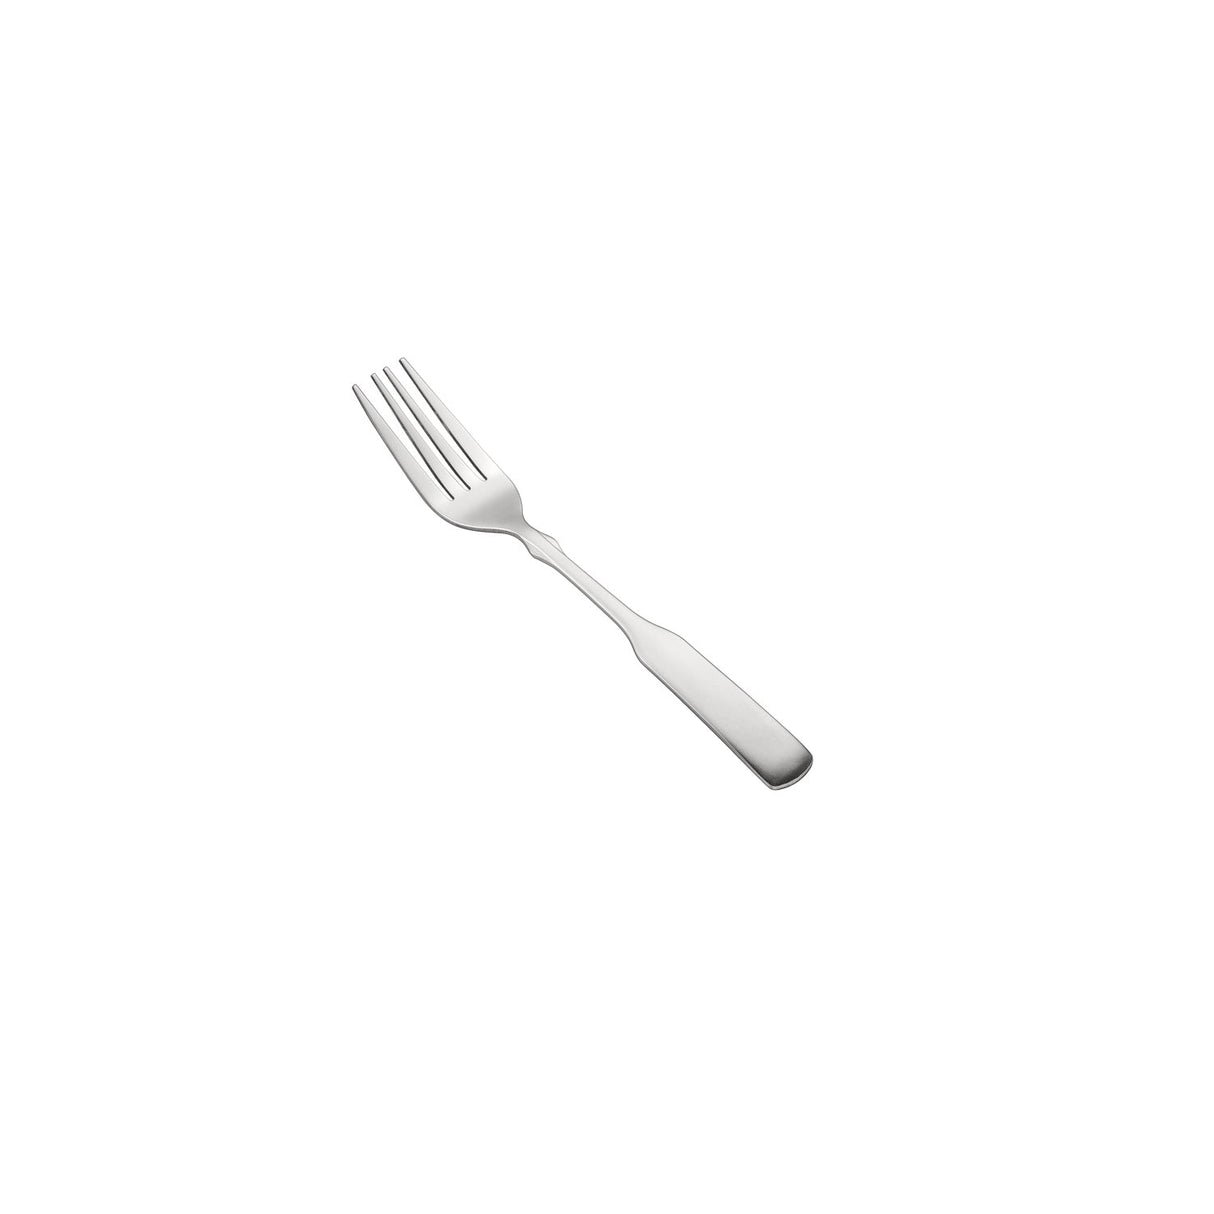 Seine Dinner Fork 18/0 HW 7 3/4"